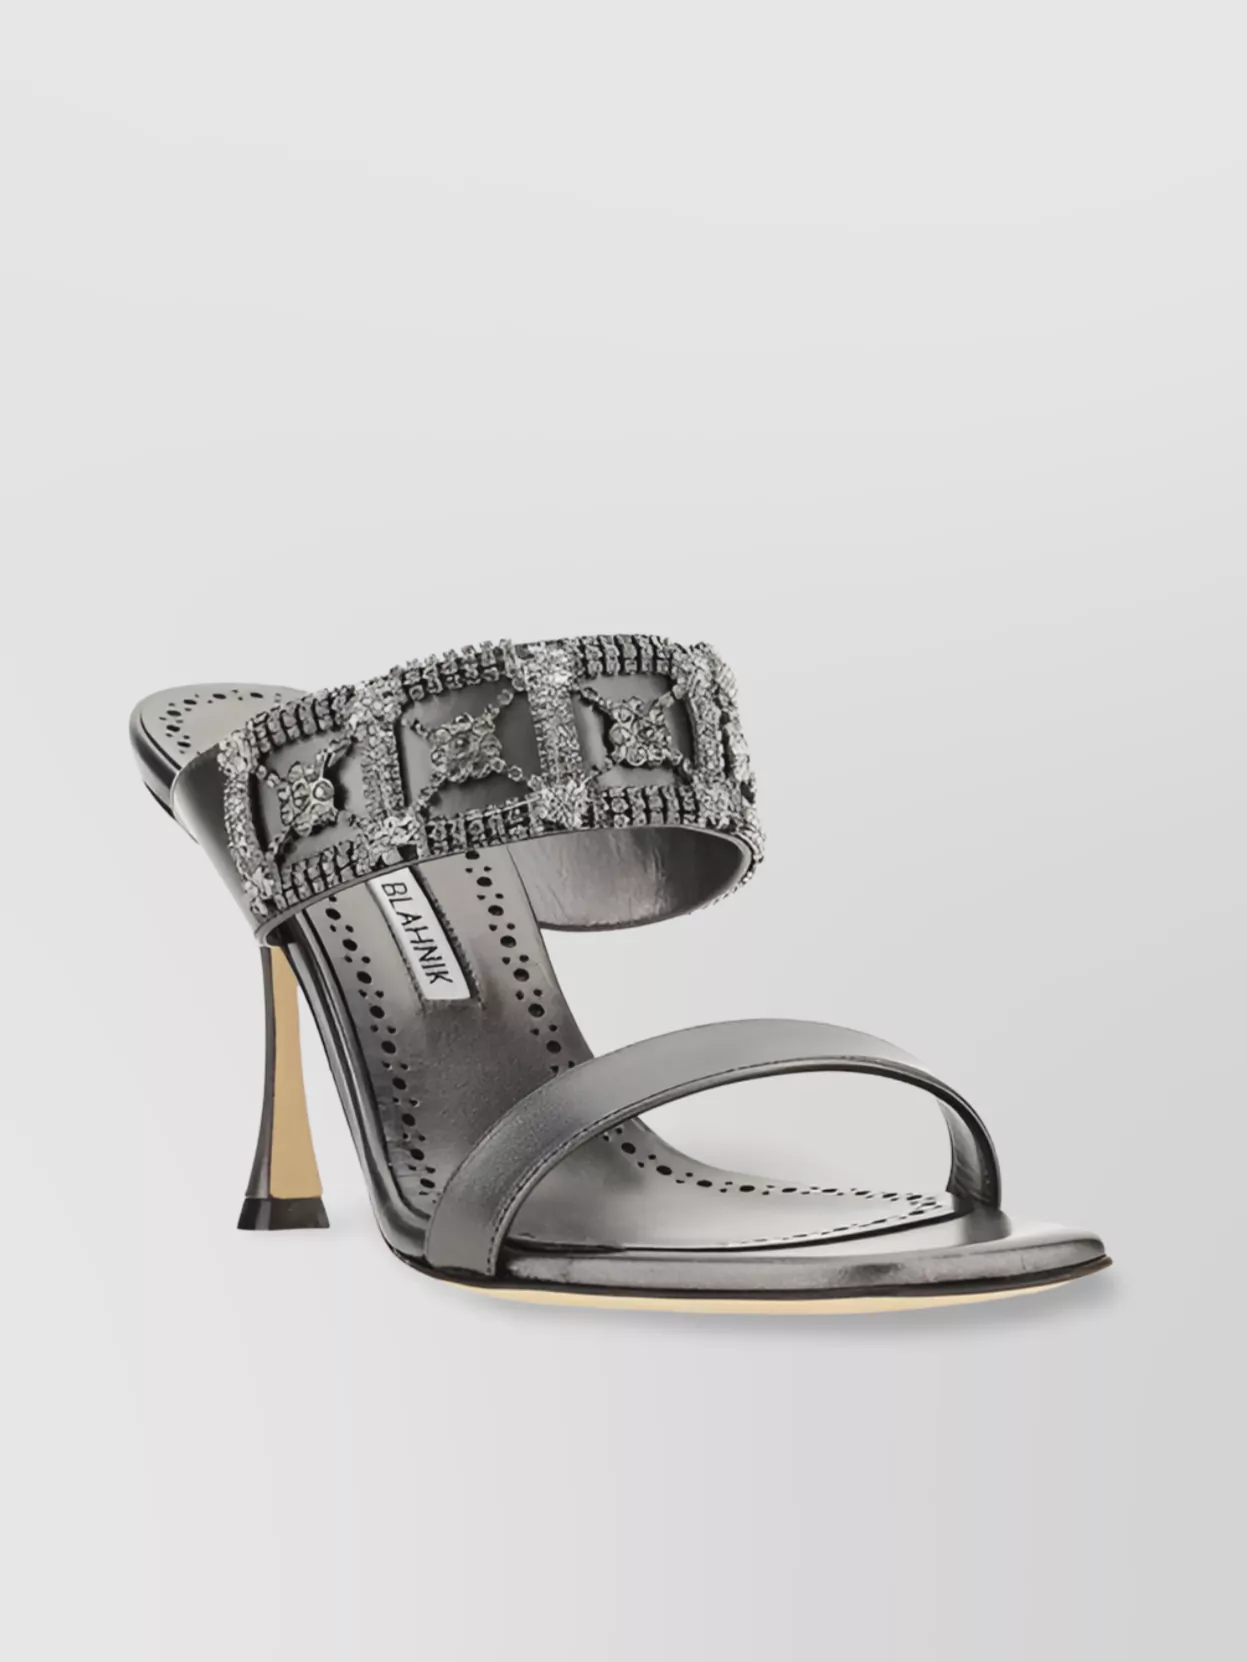 Manolo Blahnik Sandals Almond Toe Jewel Detail In Gray